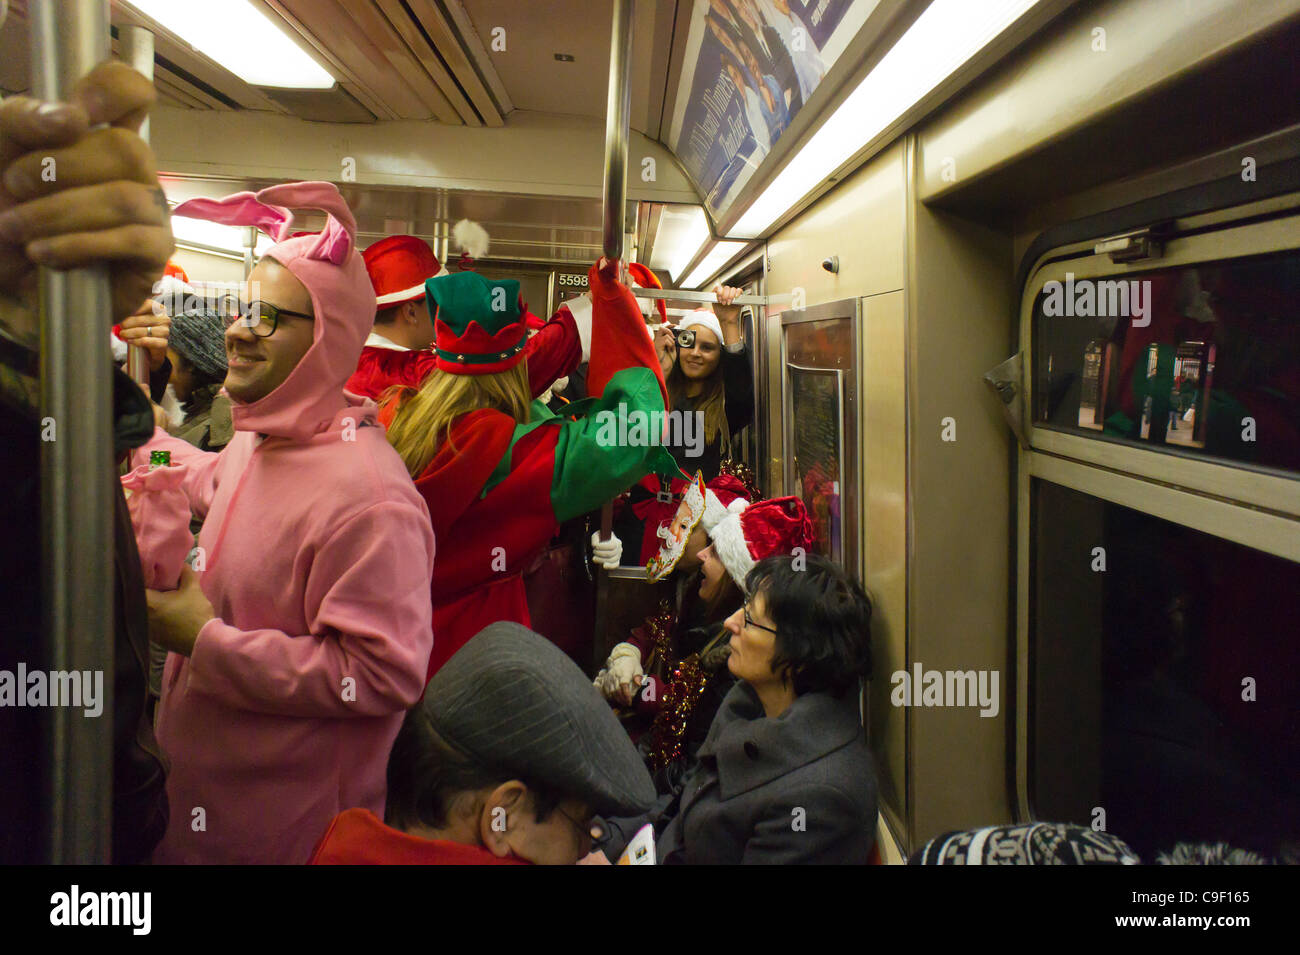 Weihnachten Nachtschwärmer Teilnahme an der jährlichen Santacon fahren mit der u-Bahn in New York auf Samstag, 10. Dezember 2011. Santacon, in erster Linie eine Kneipentour in Santa und andere Weihnachten Kostüme (bis auf einen Teilnehmer, der seinen Urlaub verwechselt habe), zieht Hunderte von Masken gehen im Zusammenhang Stockfoto